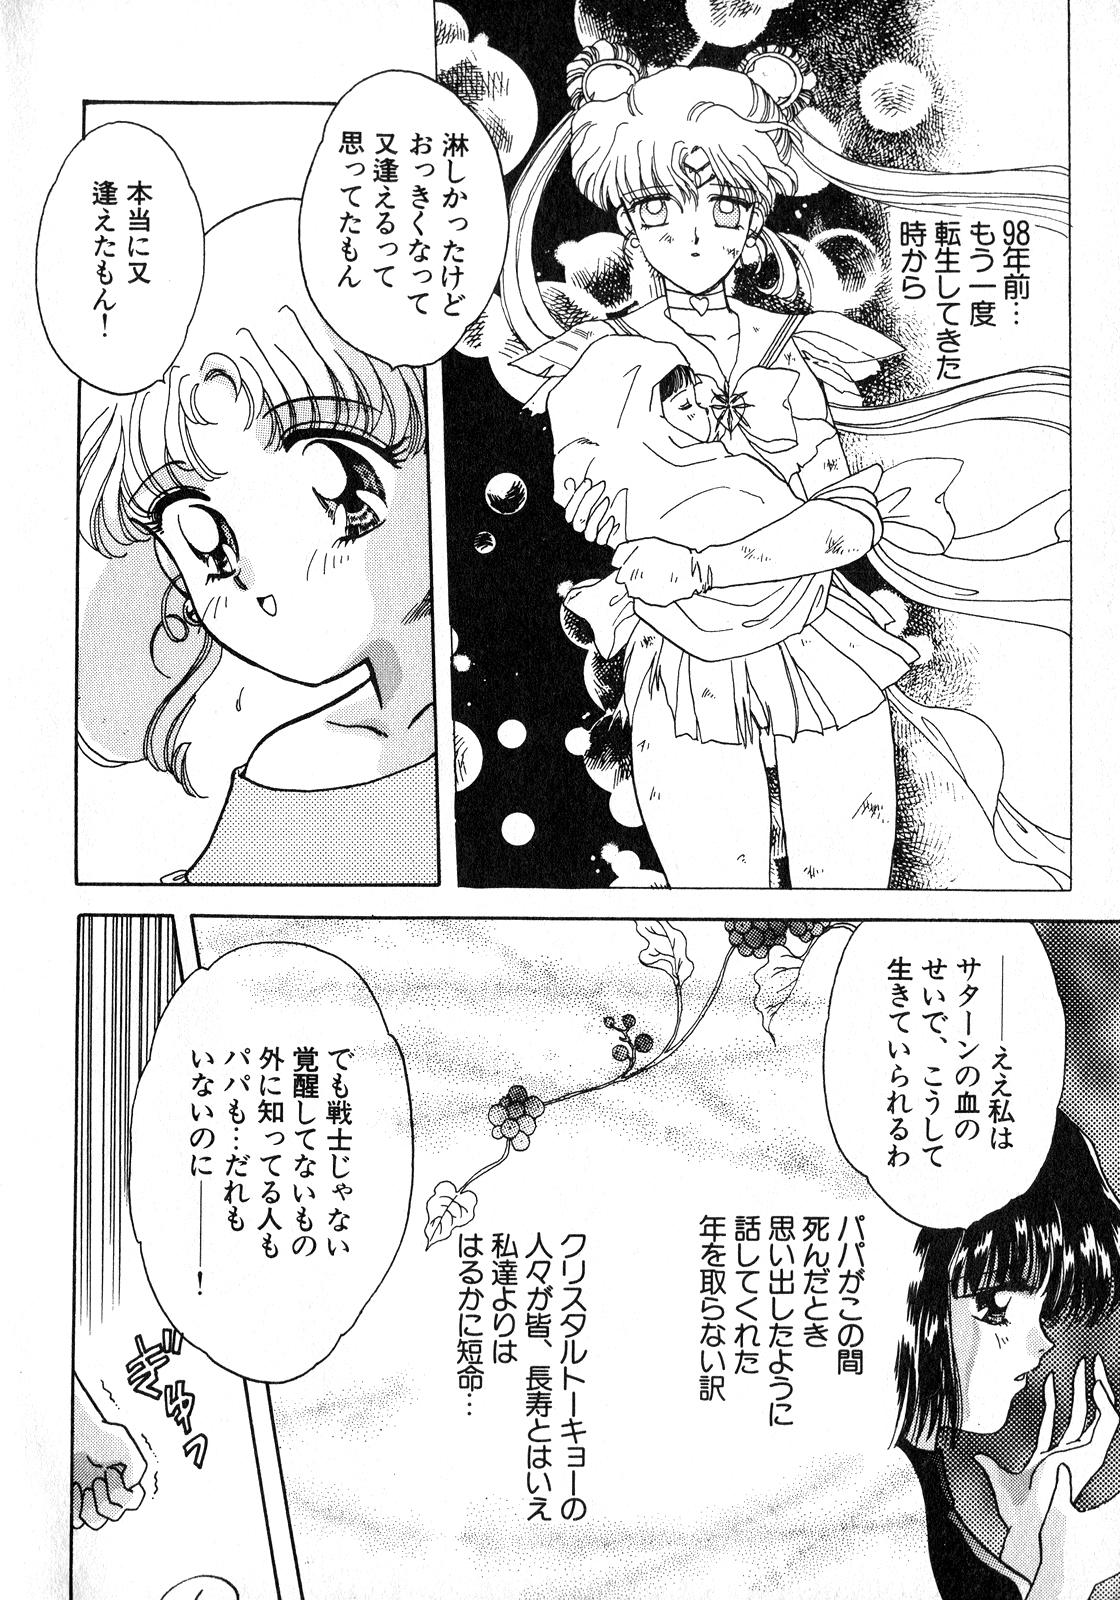 Jock Lunatic Party 8 - Sailor moon Gay Youngmen - Page 7